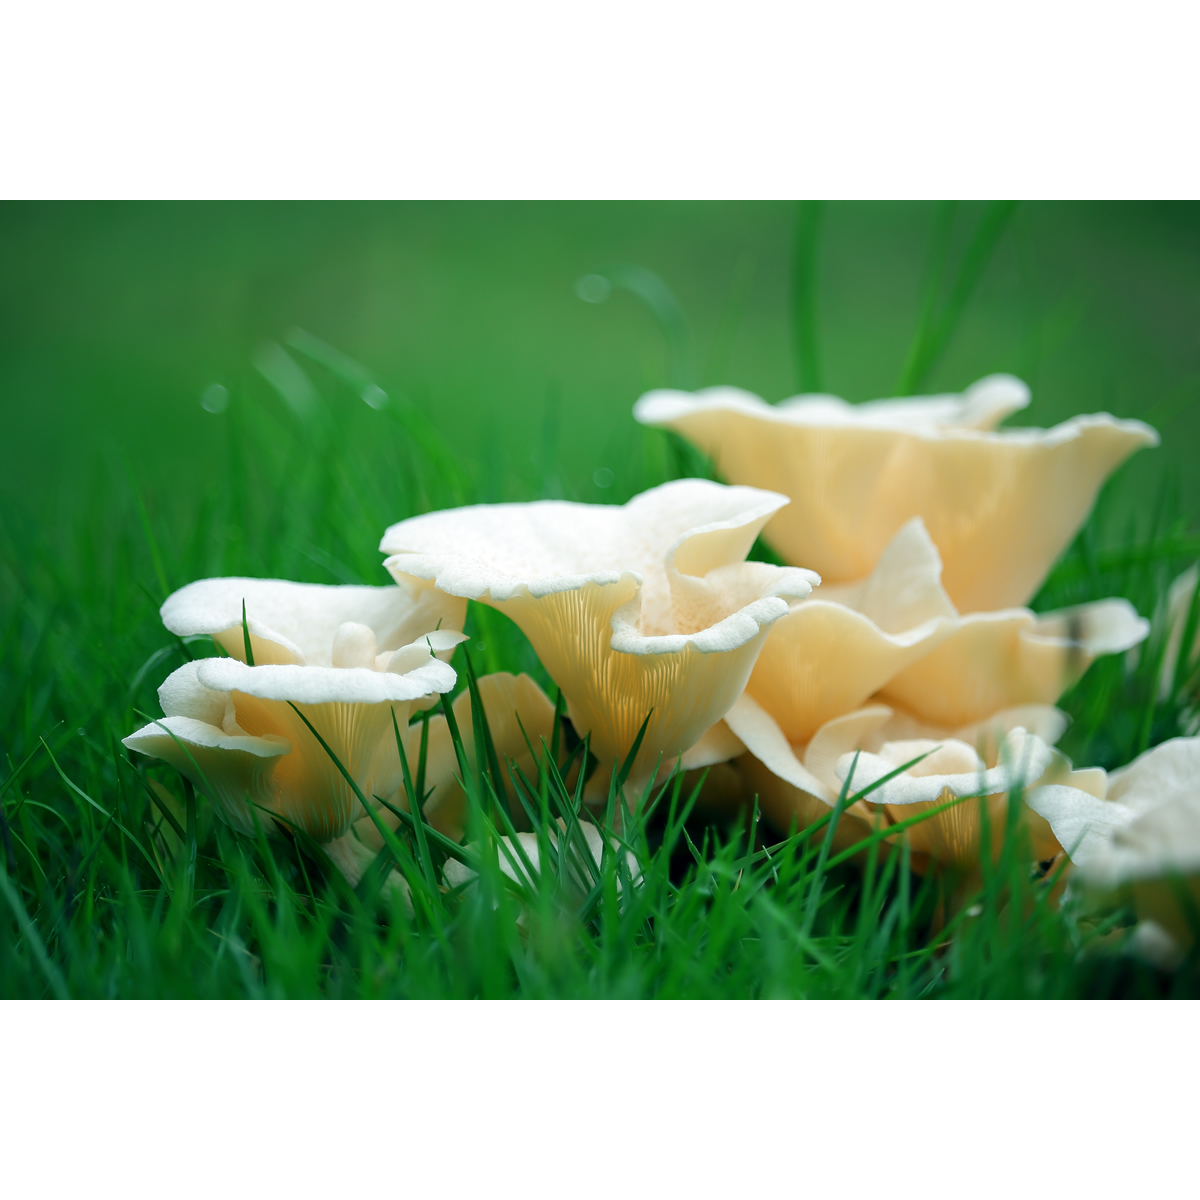 高清蘑菇微距摄影作品(4张组图) 原创春天素材、精美壁纸